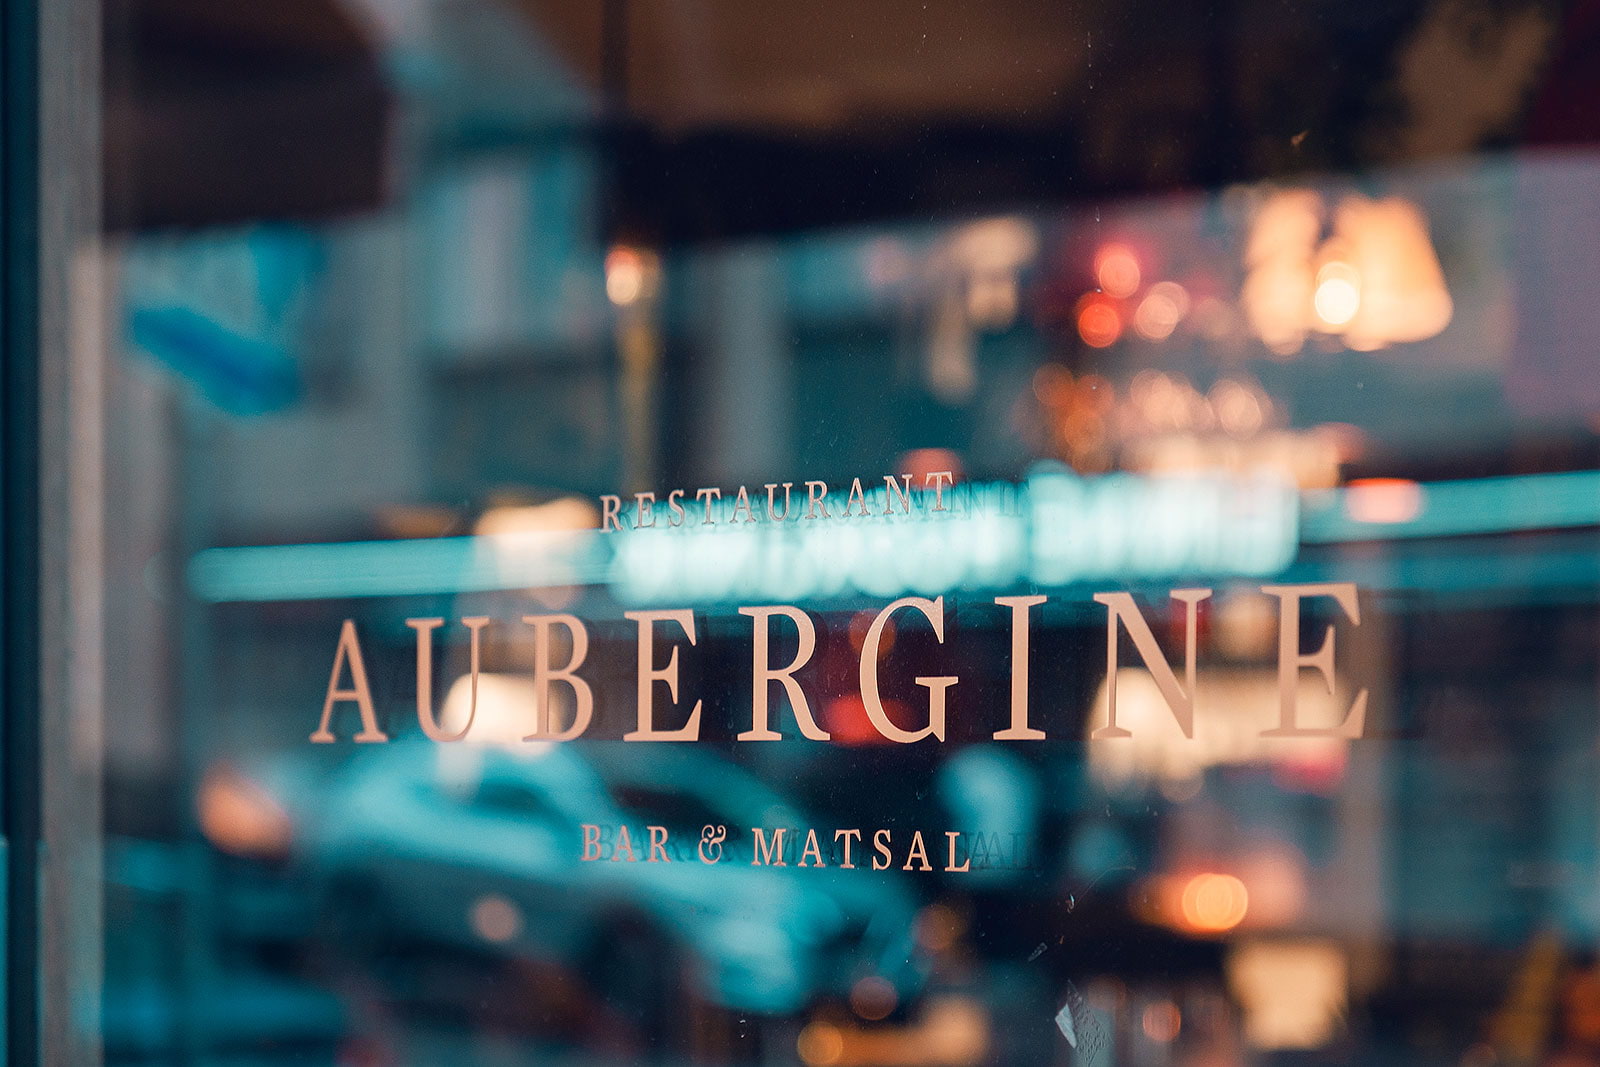 Restaurant Aubergine – Restauranger med matkassar